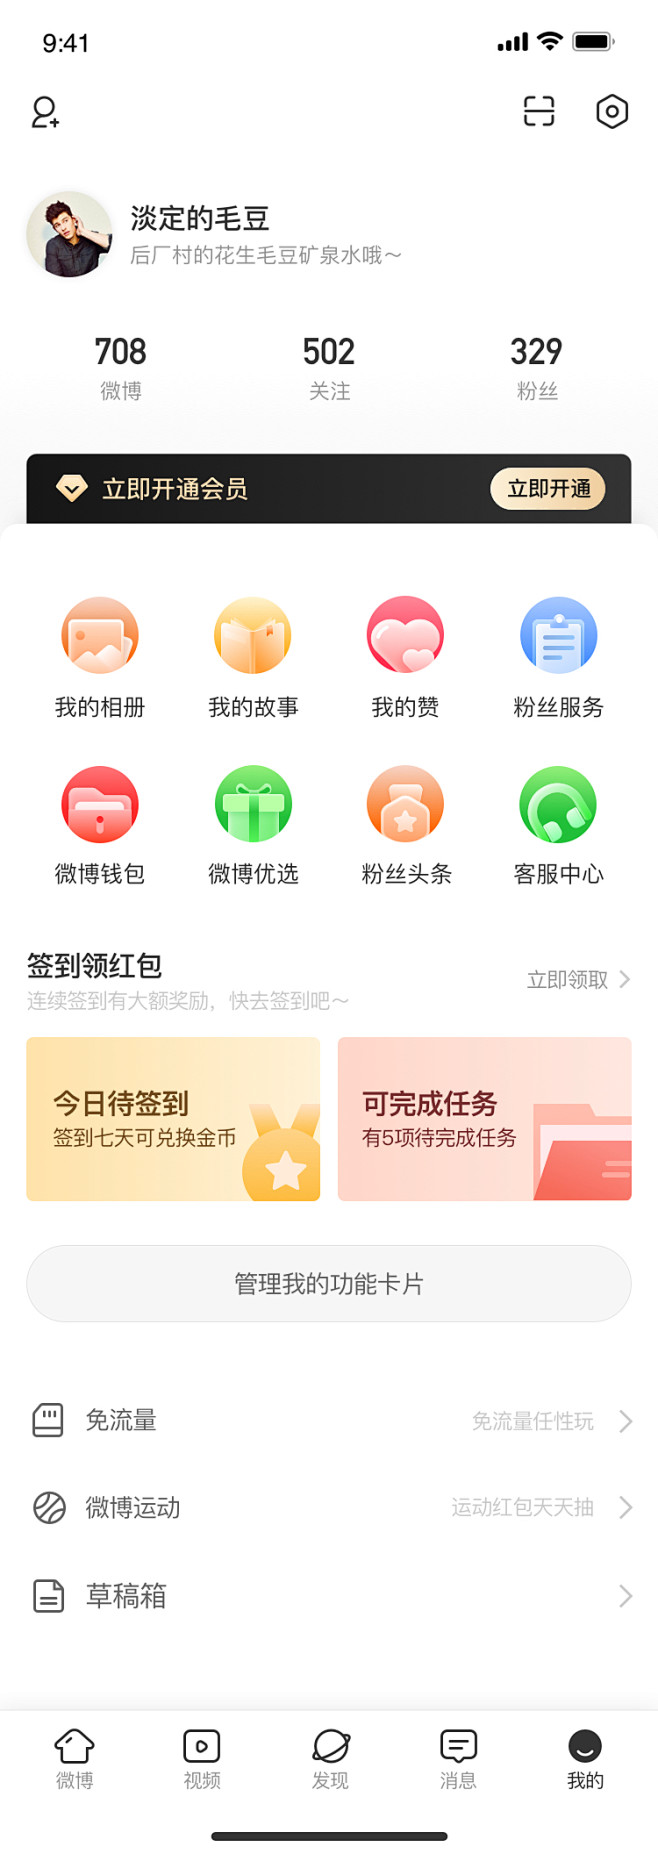 我的页面#微博重构#app@WANCHU